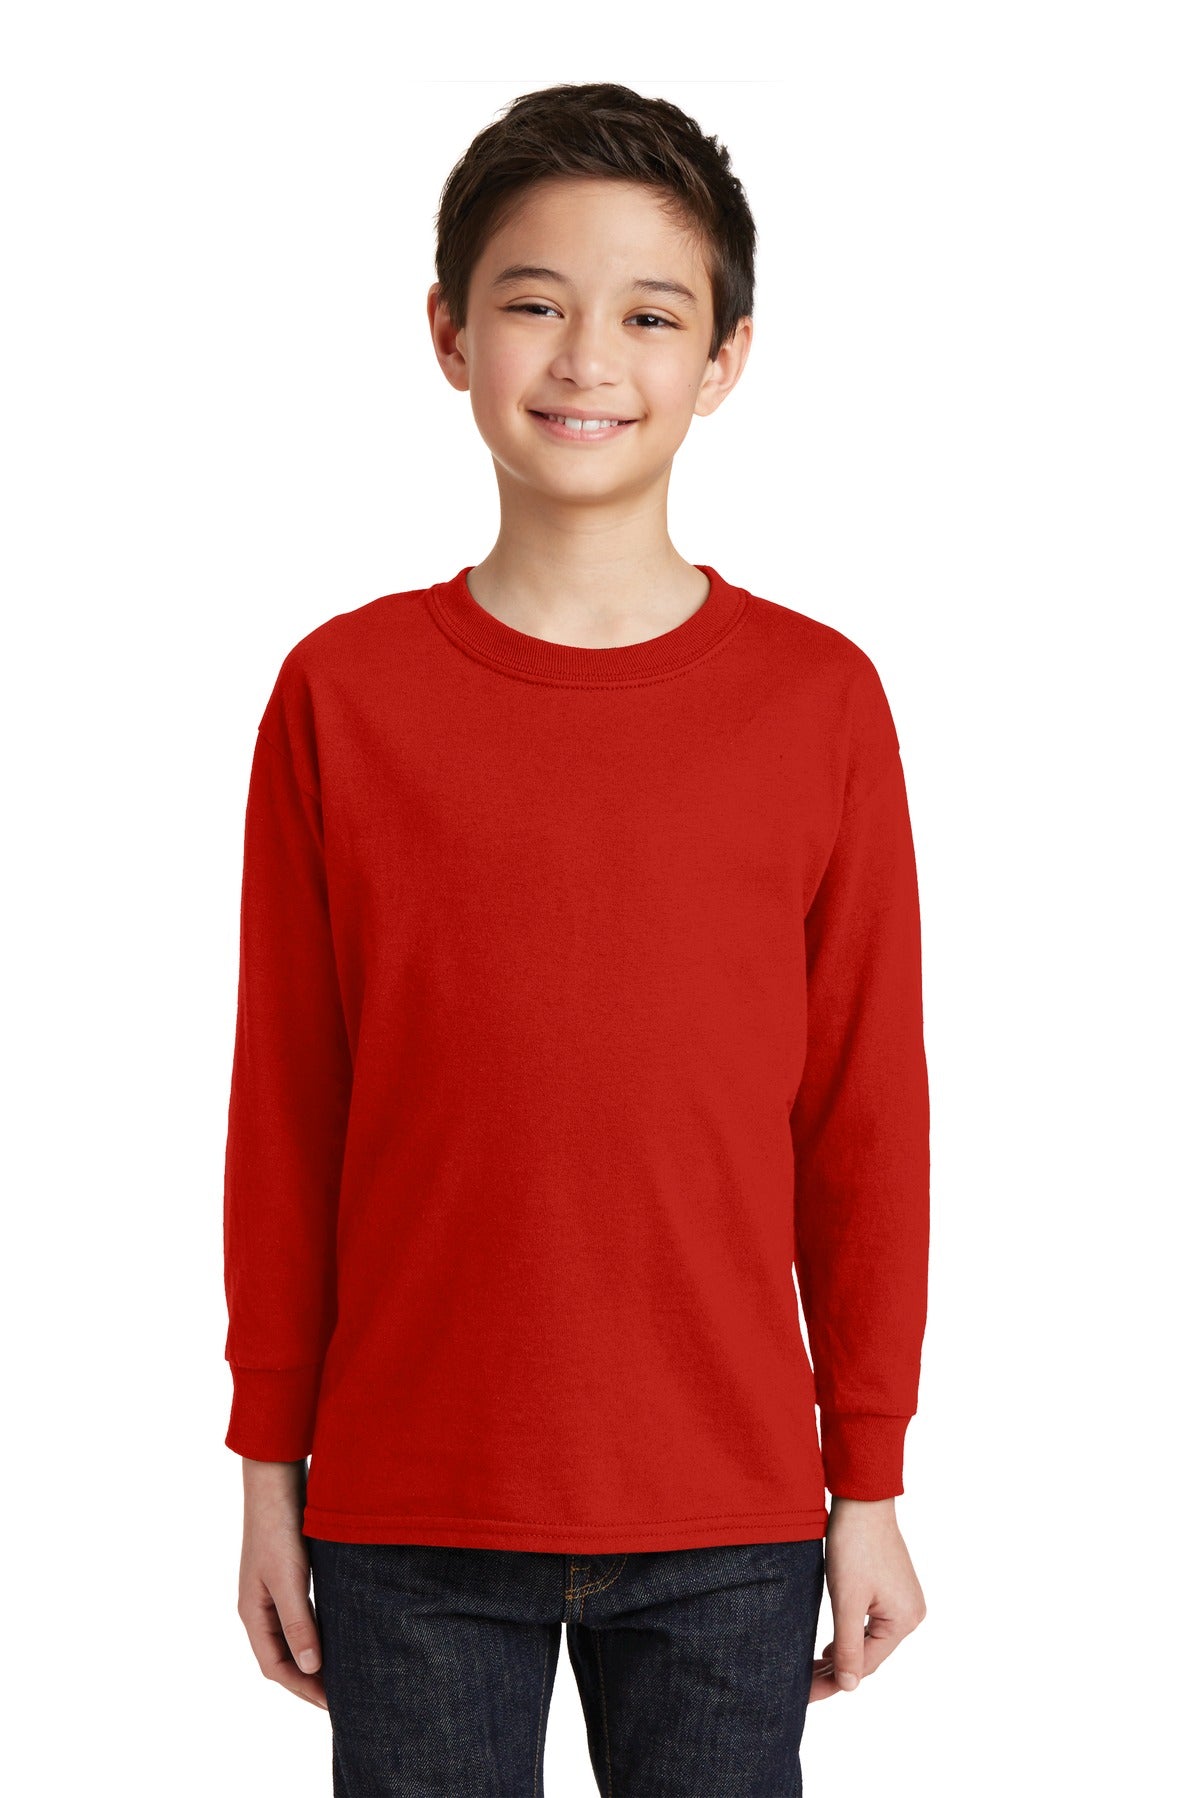 T-shirt Red Gildan